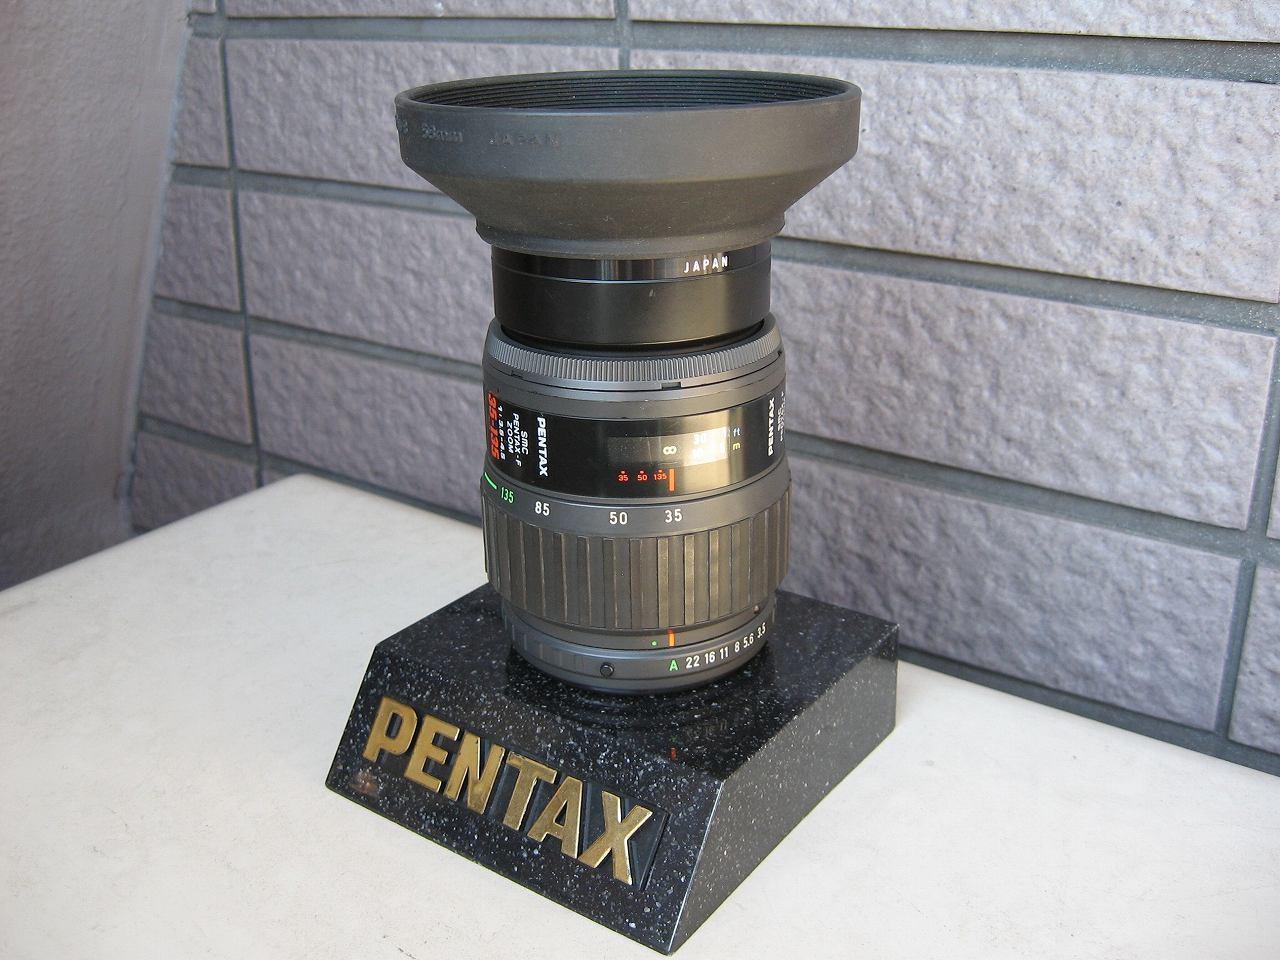 レンズ(ズーム)PENTAX 1:3.5-5.6 20-105mm | www.homepersonalshopper.it